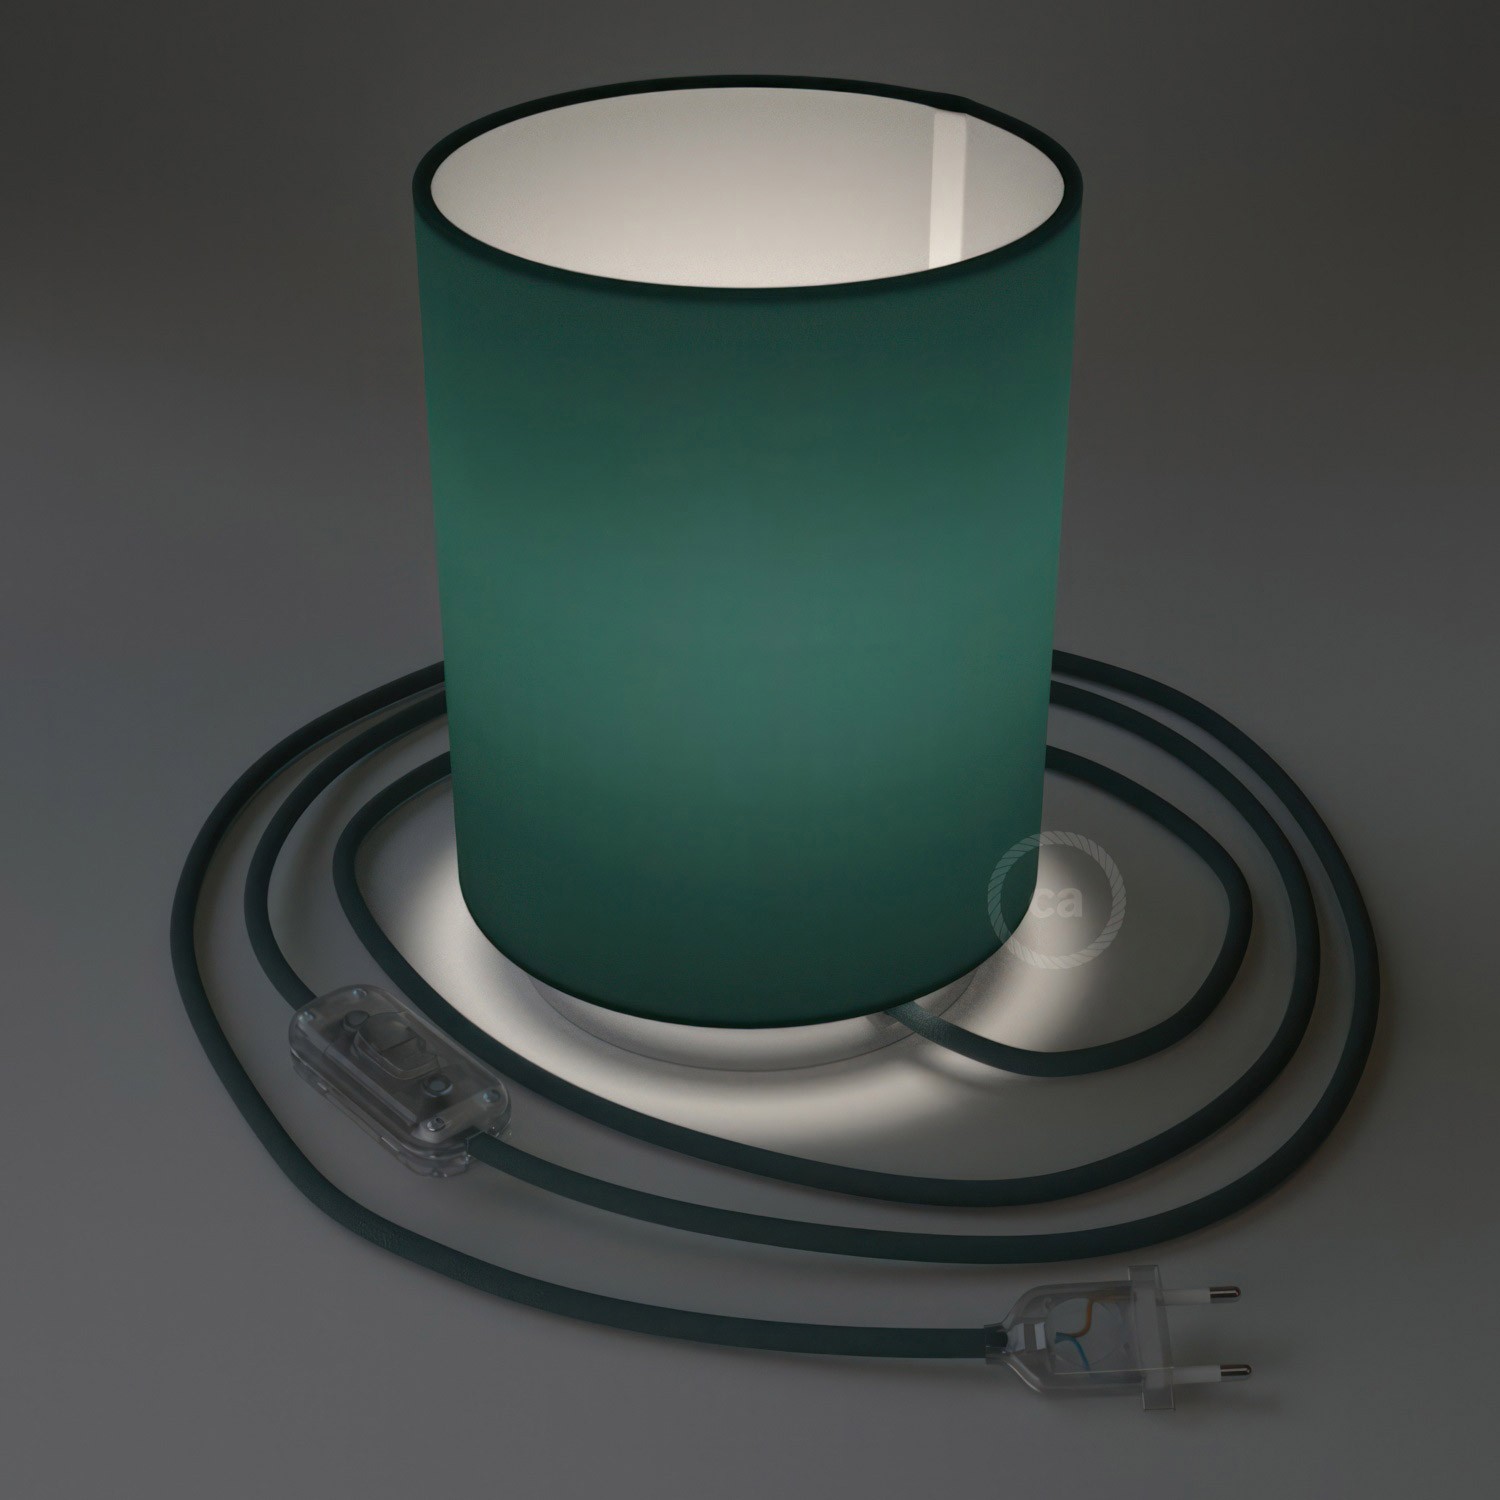 Lampe Posaluce en métal avec abat-jour Cilindro Cinette pétrole, avec câble textile, interrupteur et prise bipolaire